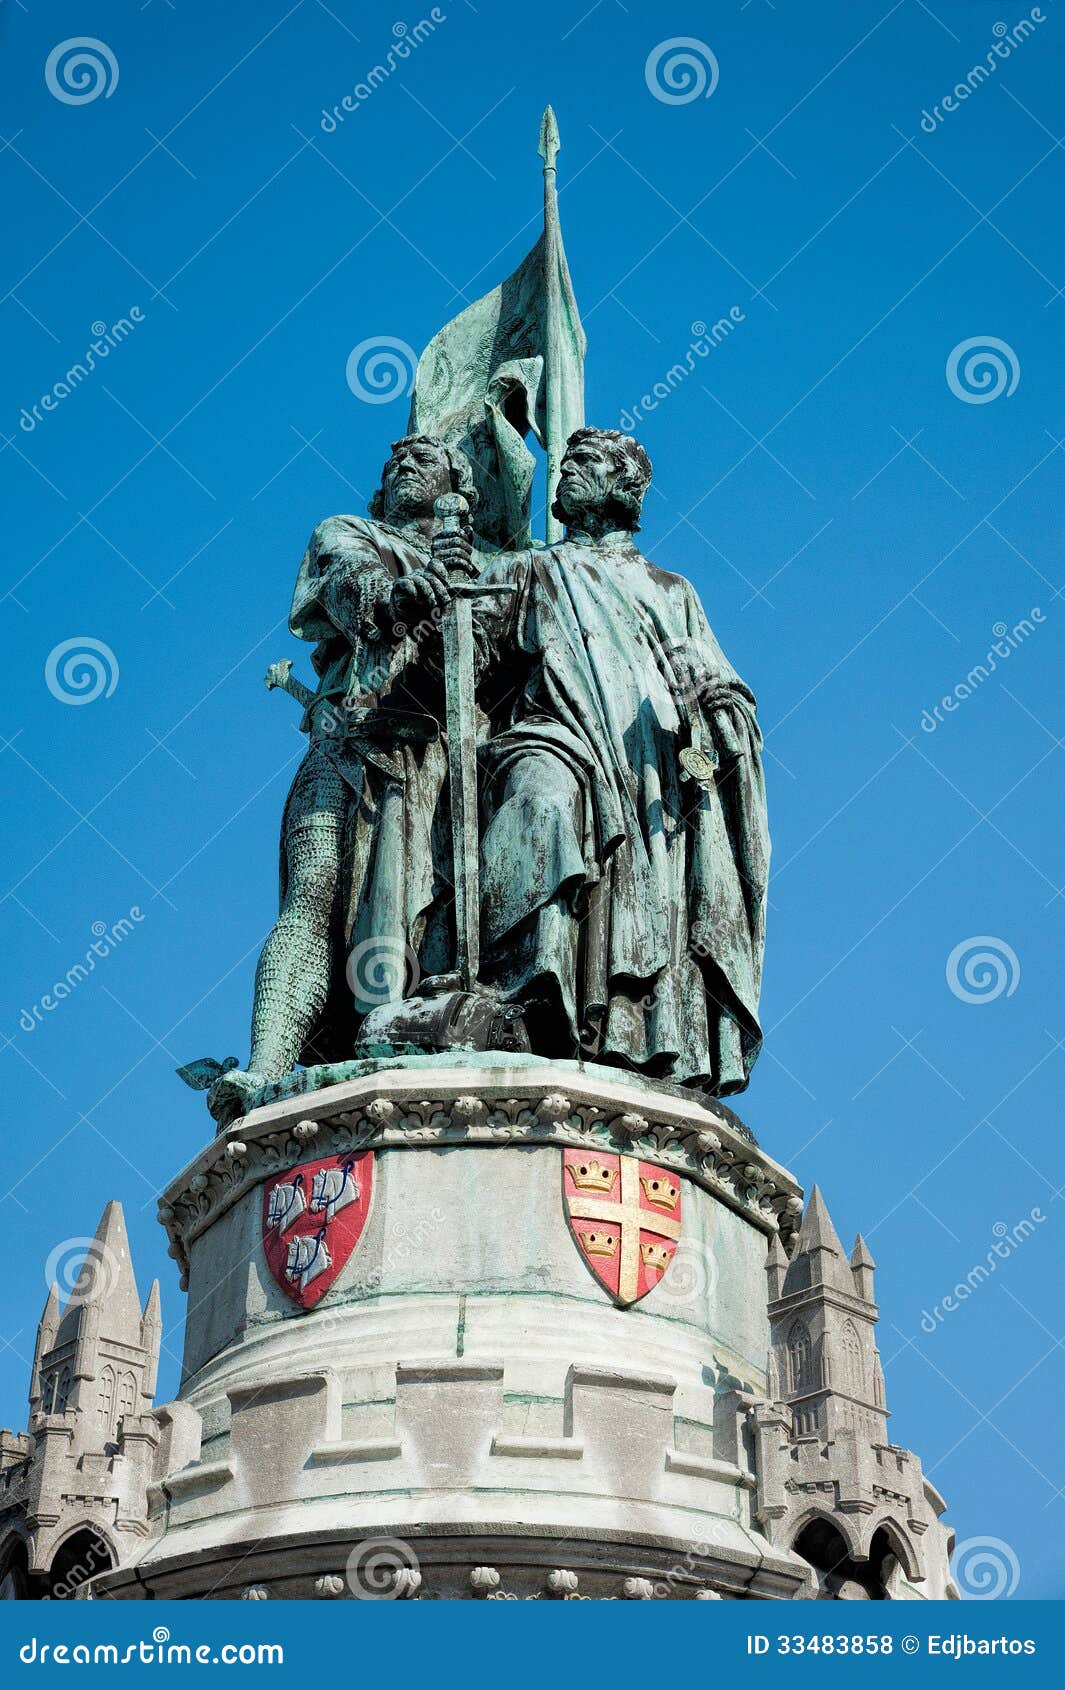 statue of jan breydel and pieter de coninck